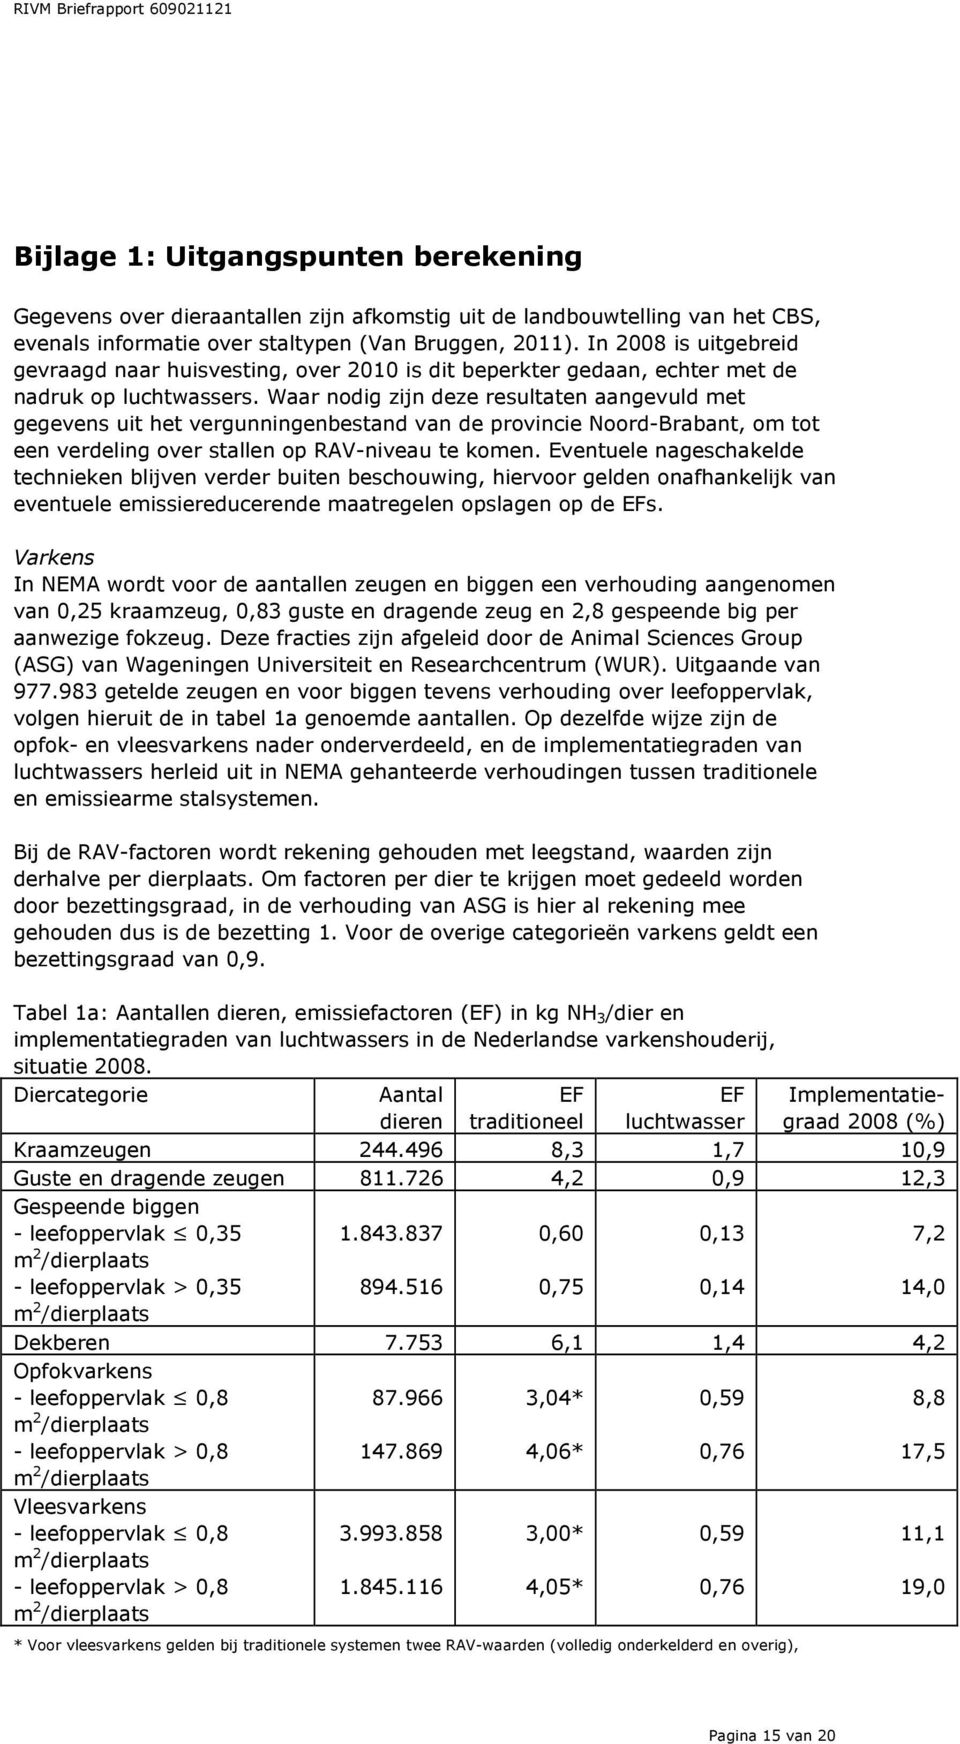 Waar nodig zijn deze resultaten aangevuld met gegevens uit het vergunningenbestand van de provincie Noord-Brabant, om tot een verdeling over stallen op RAV-niveau te komen.